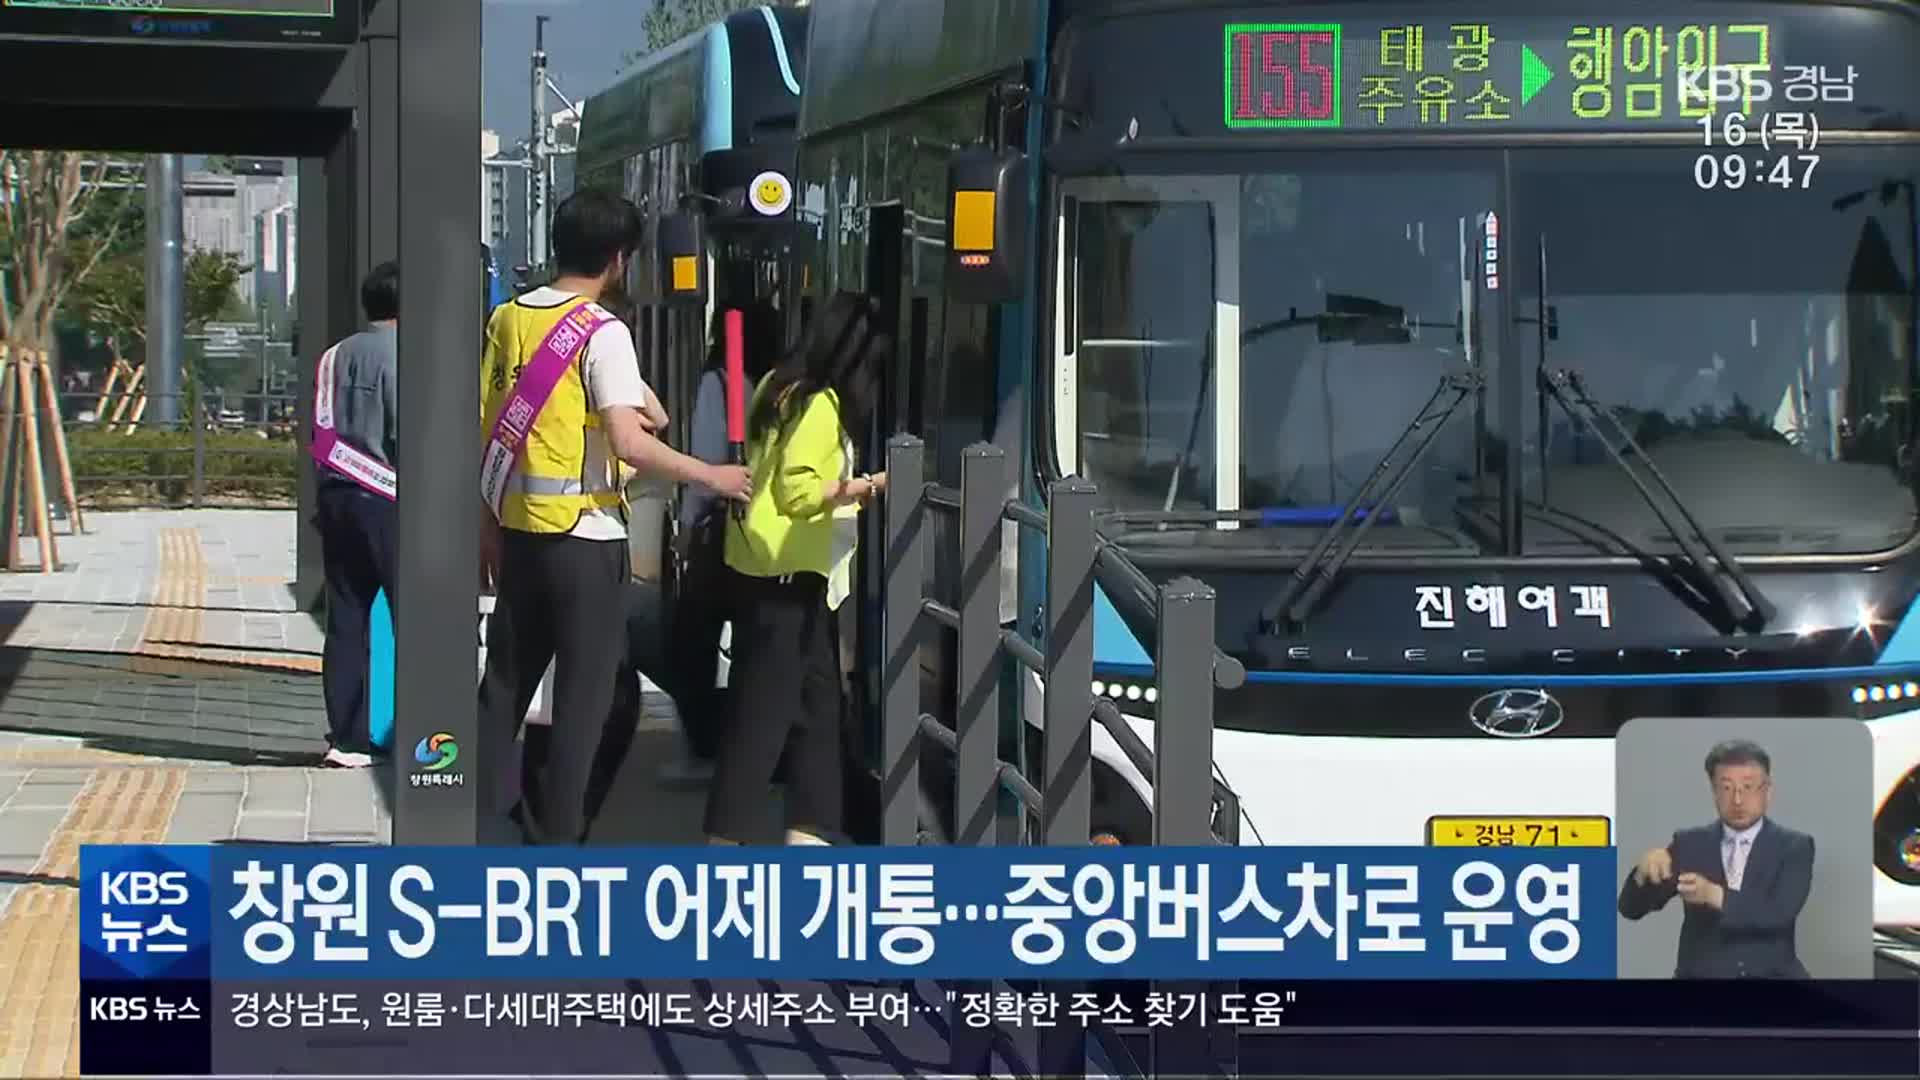 창원 S-BRT 어제 개통…중앙버스차로 운영